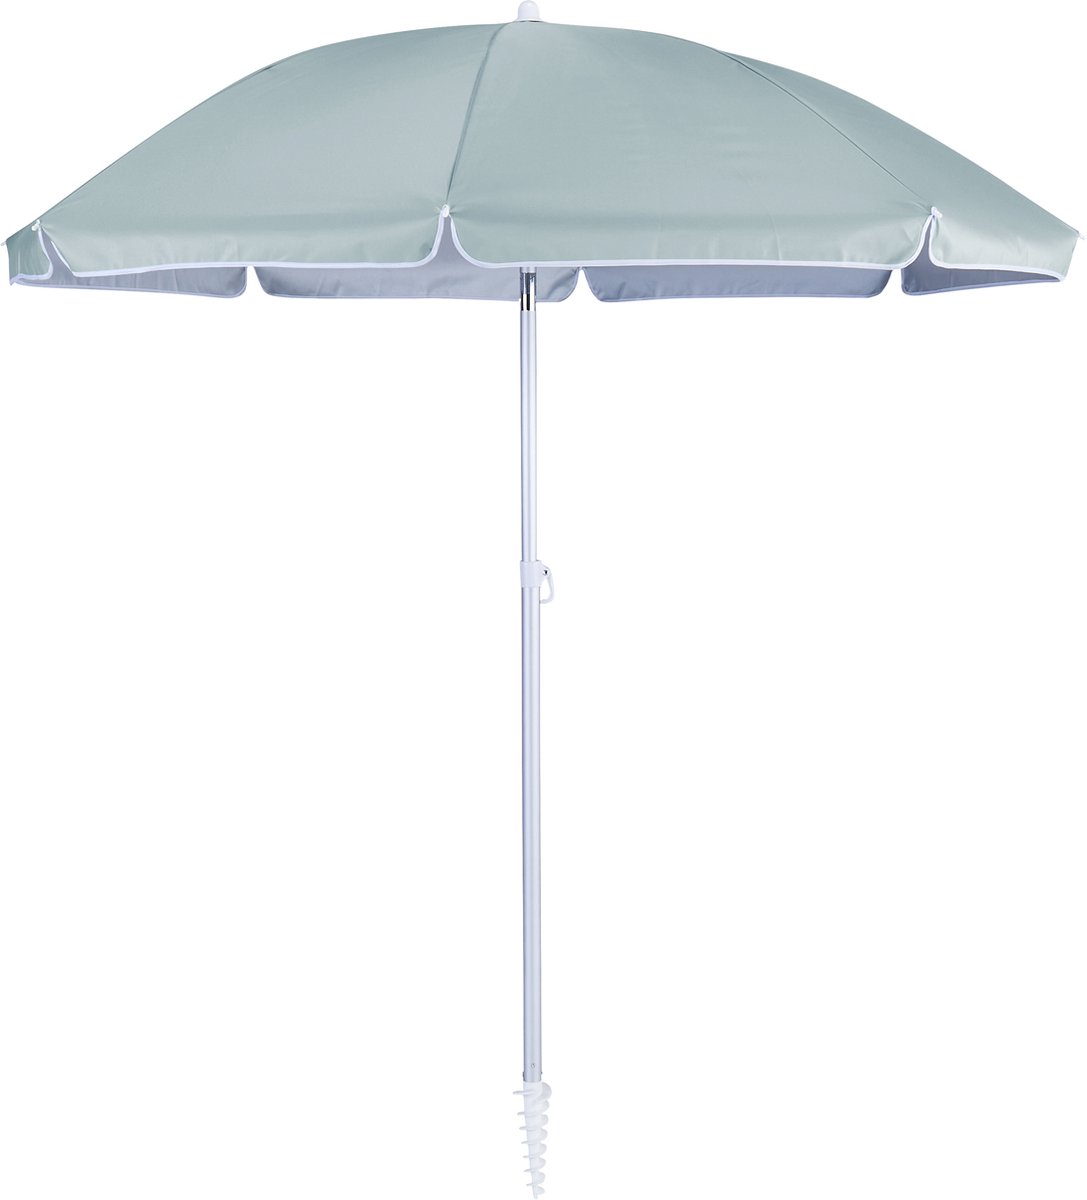 NATERIAL- Parasol VALI - Ronde parasol - ø 200 cm - 3,14 m² - 95% UV-bescherming - Kantelbaar - Met transporttas - Aluminium - Polyester - Watergroen